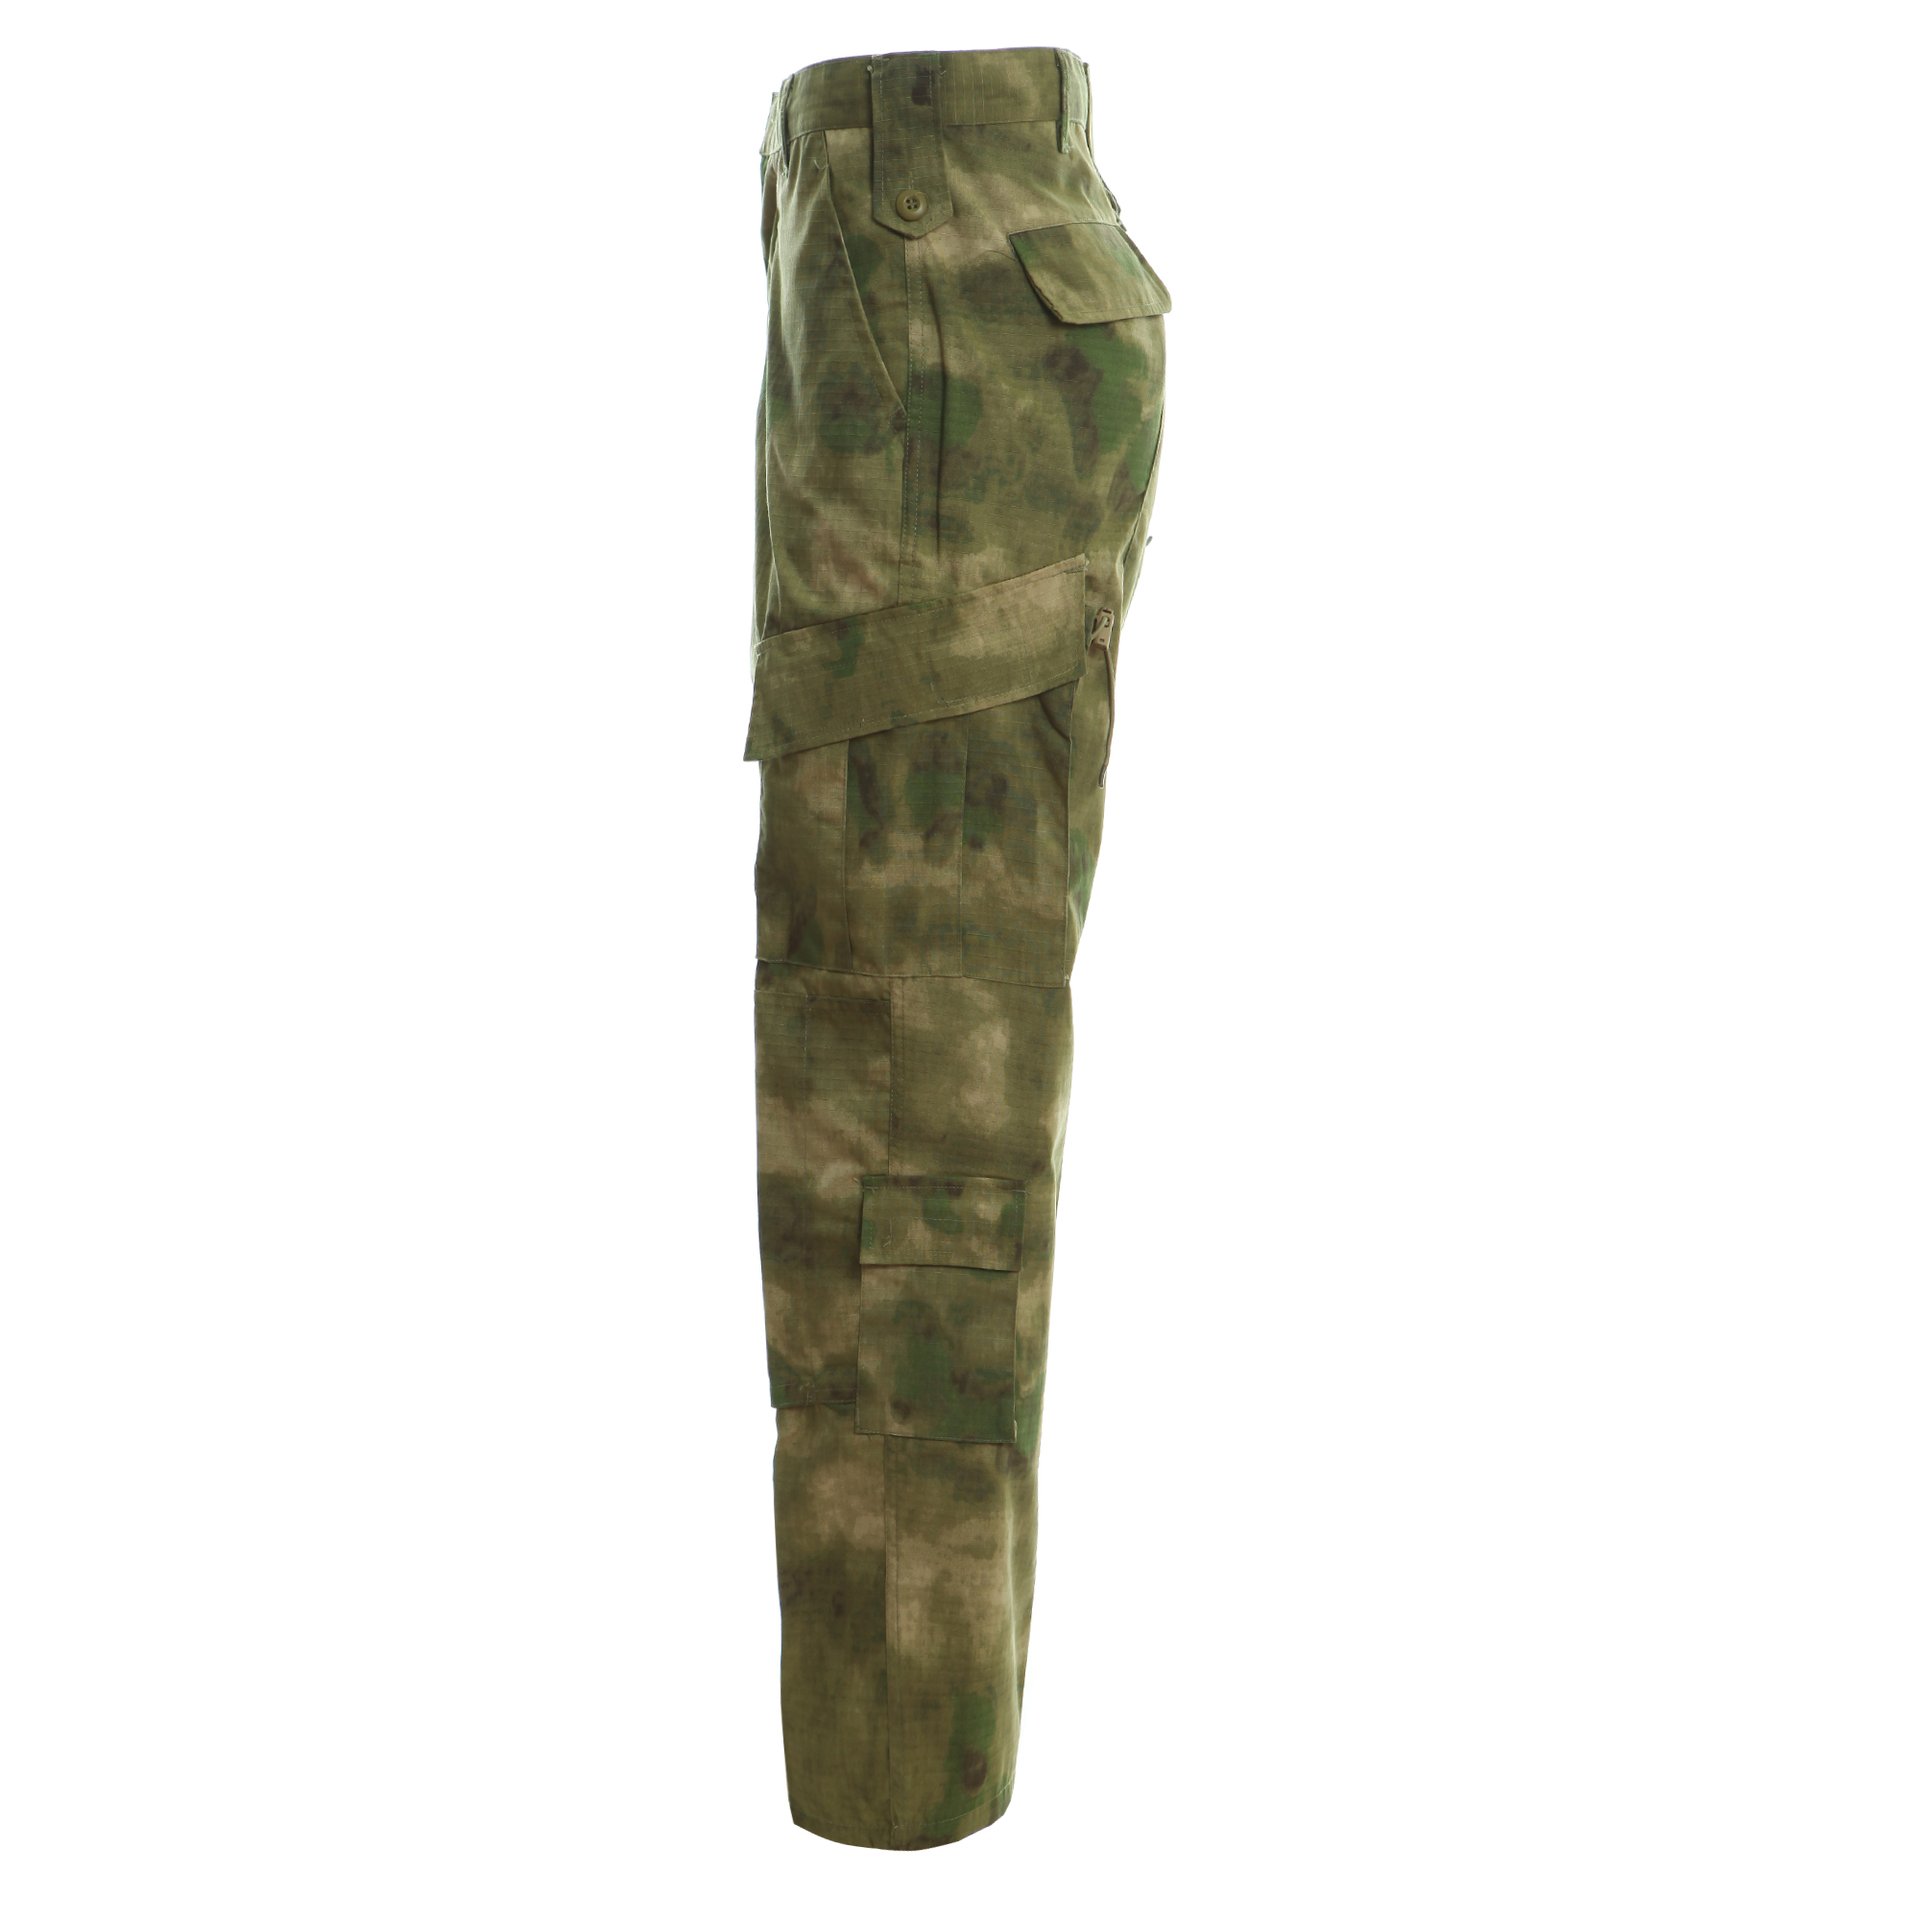 Wholesale Cheap Combat Uniform Camouflage ACU Suit Tactical Uniform